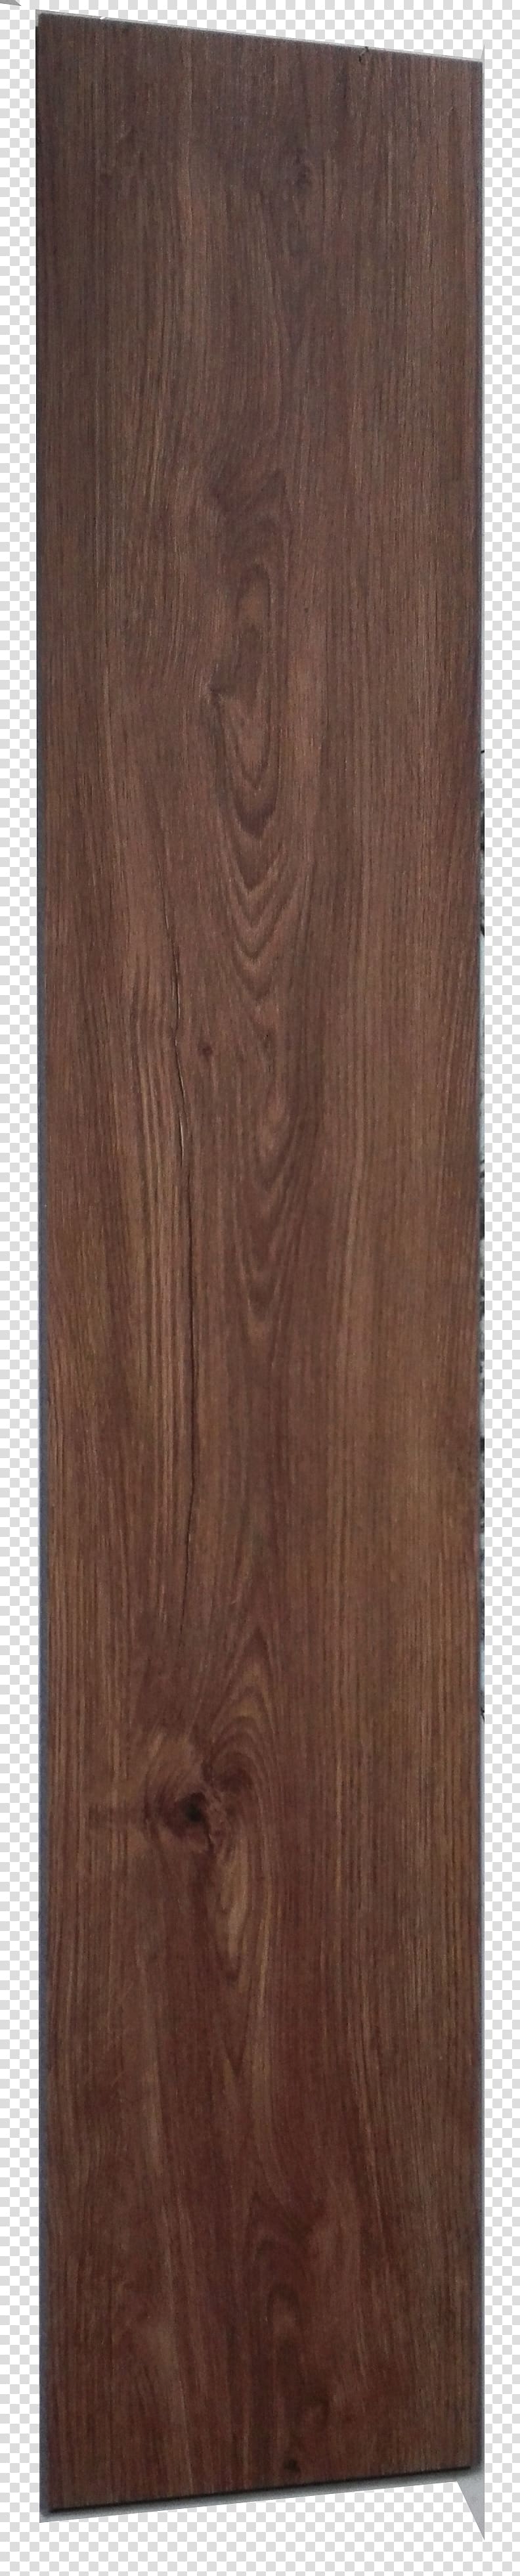 Laminate flooring Pavement Suelo de PVC Wood, wood transparent background PNG clipart